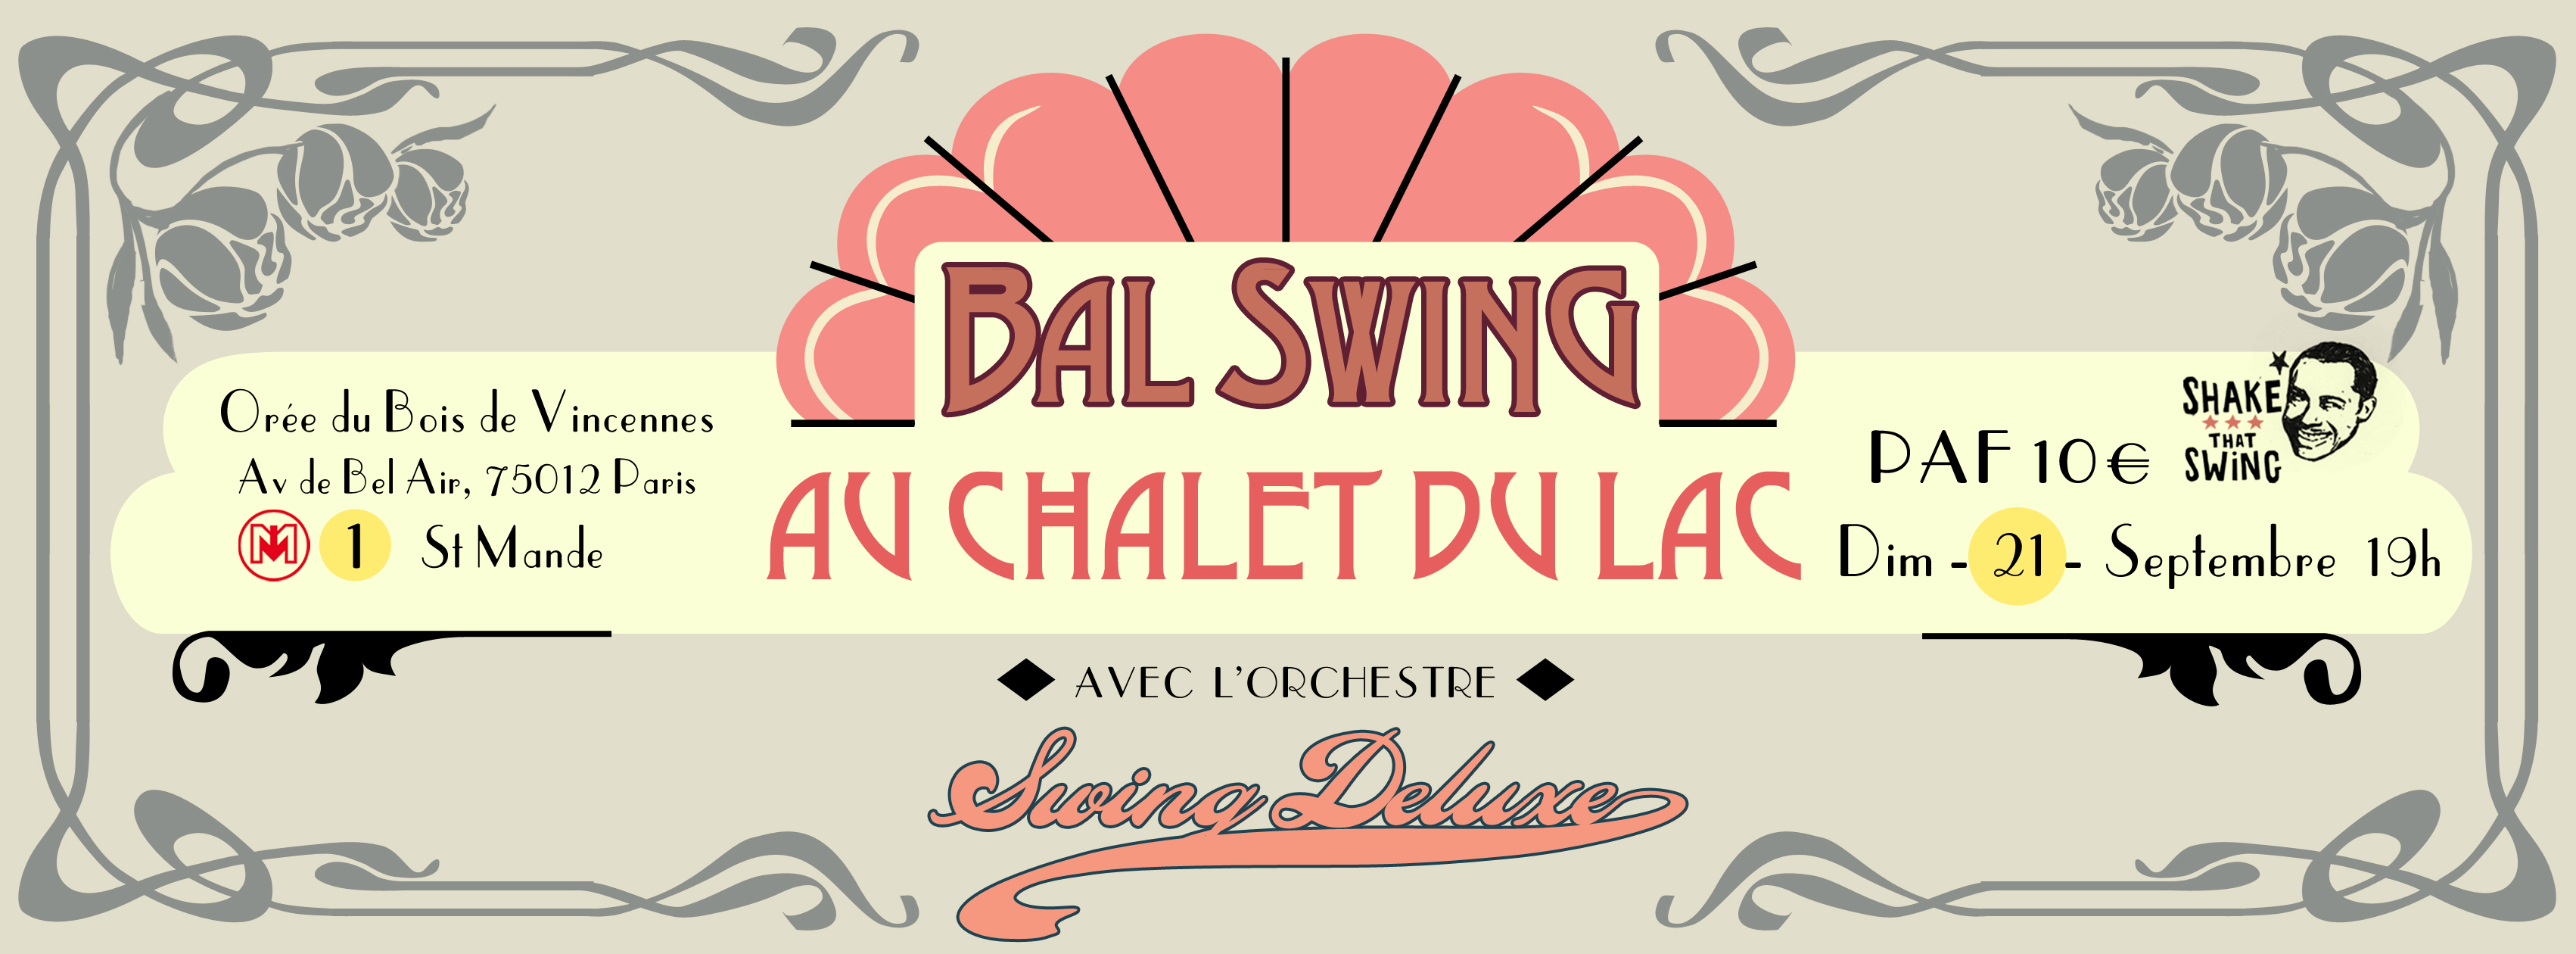 Bal Swing Chalet du Lac 21 septembre